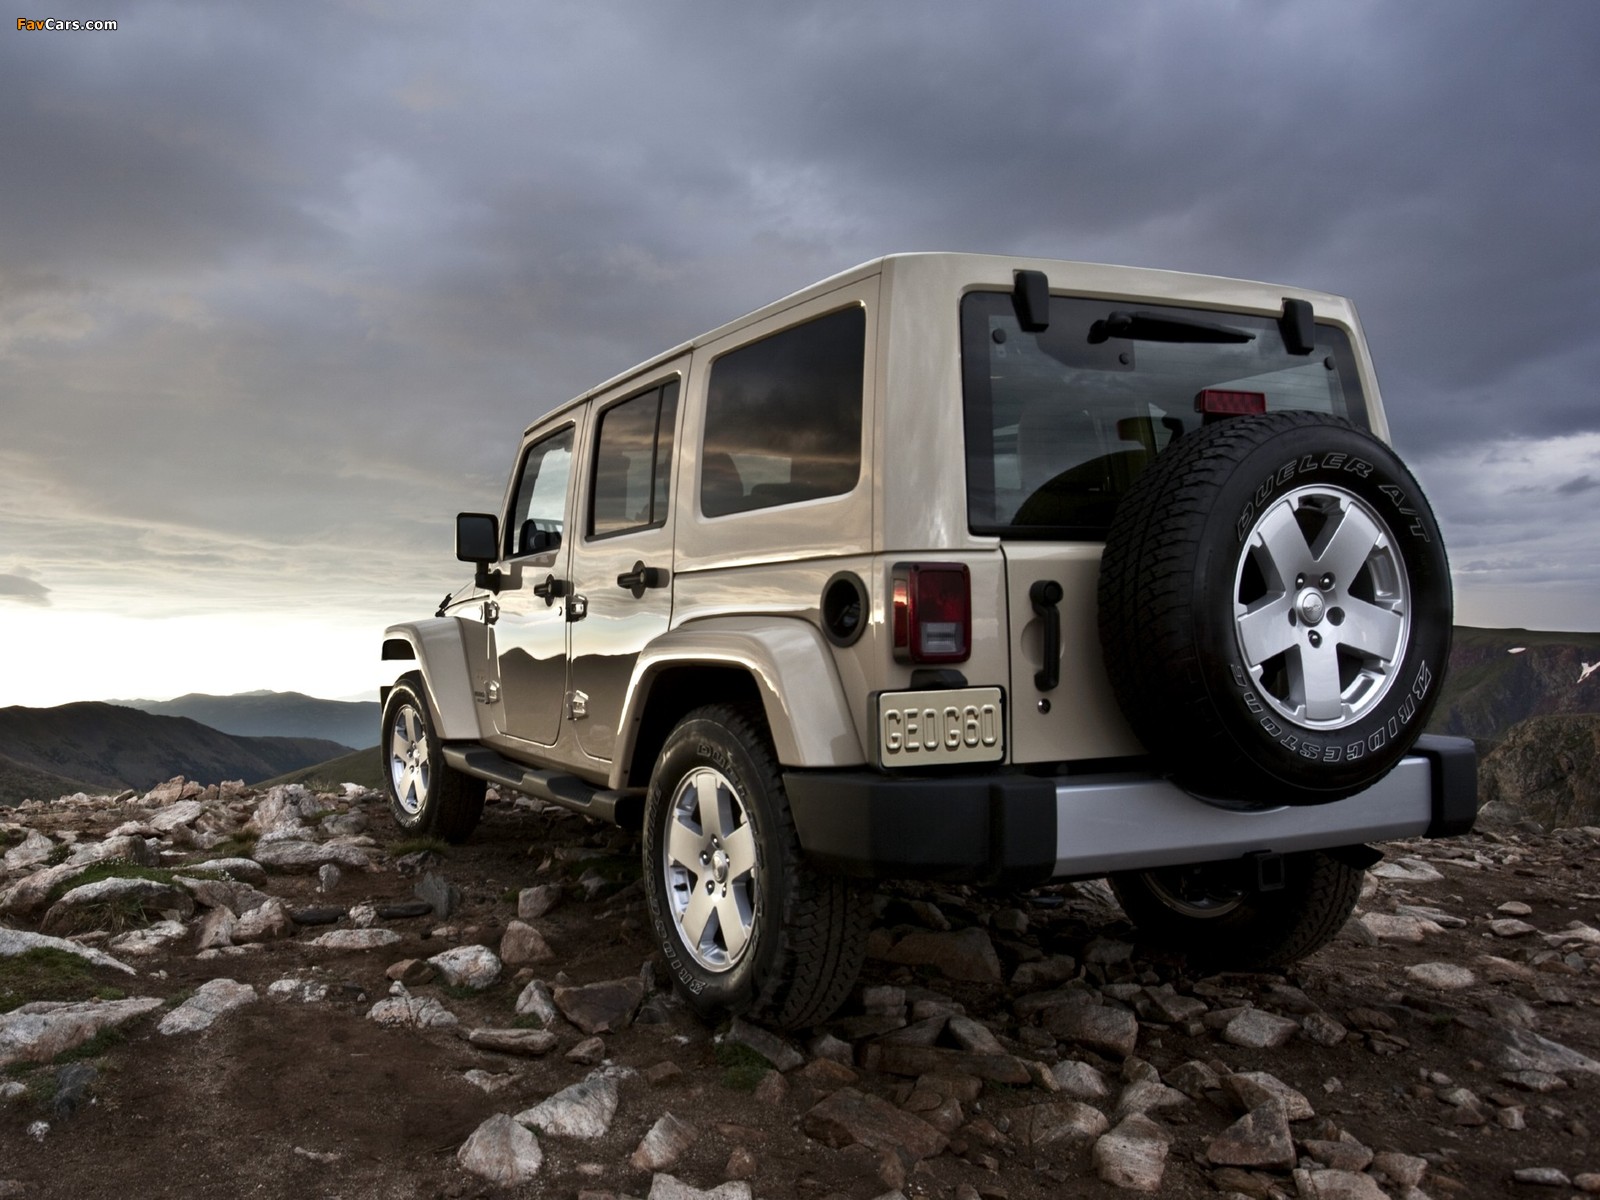 Jeep Wrangler Unlimited Sahara (JK) 2010 photos (1600 x 1200)